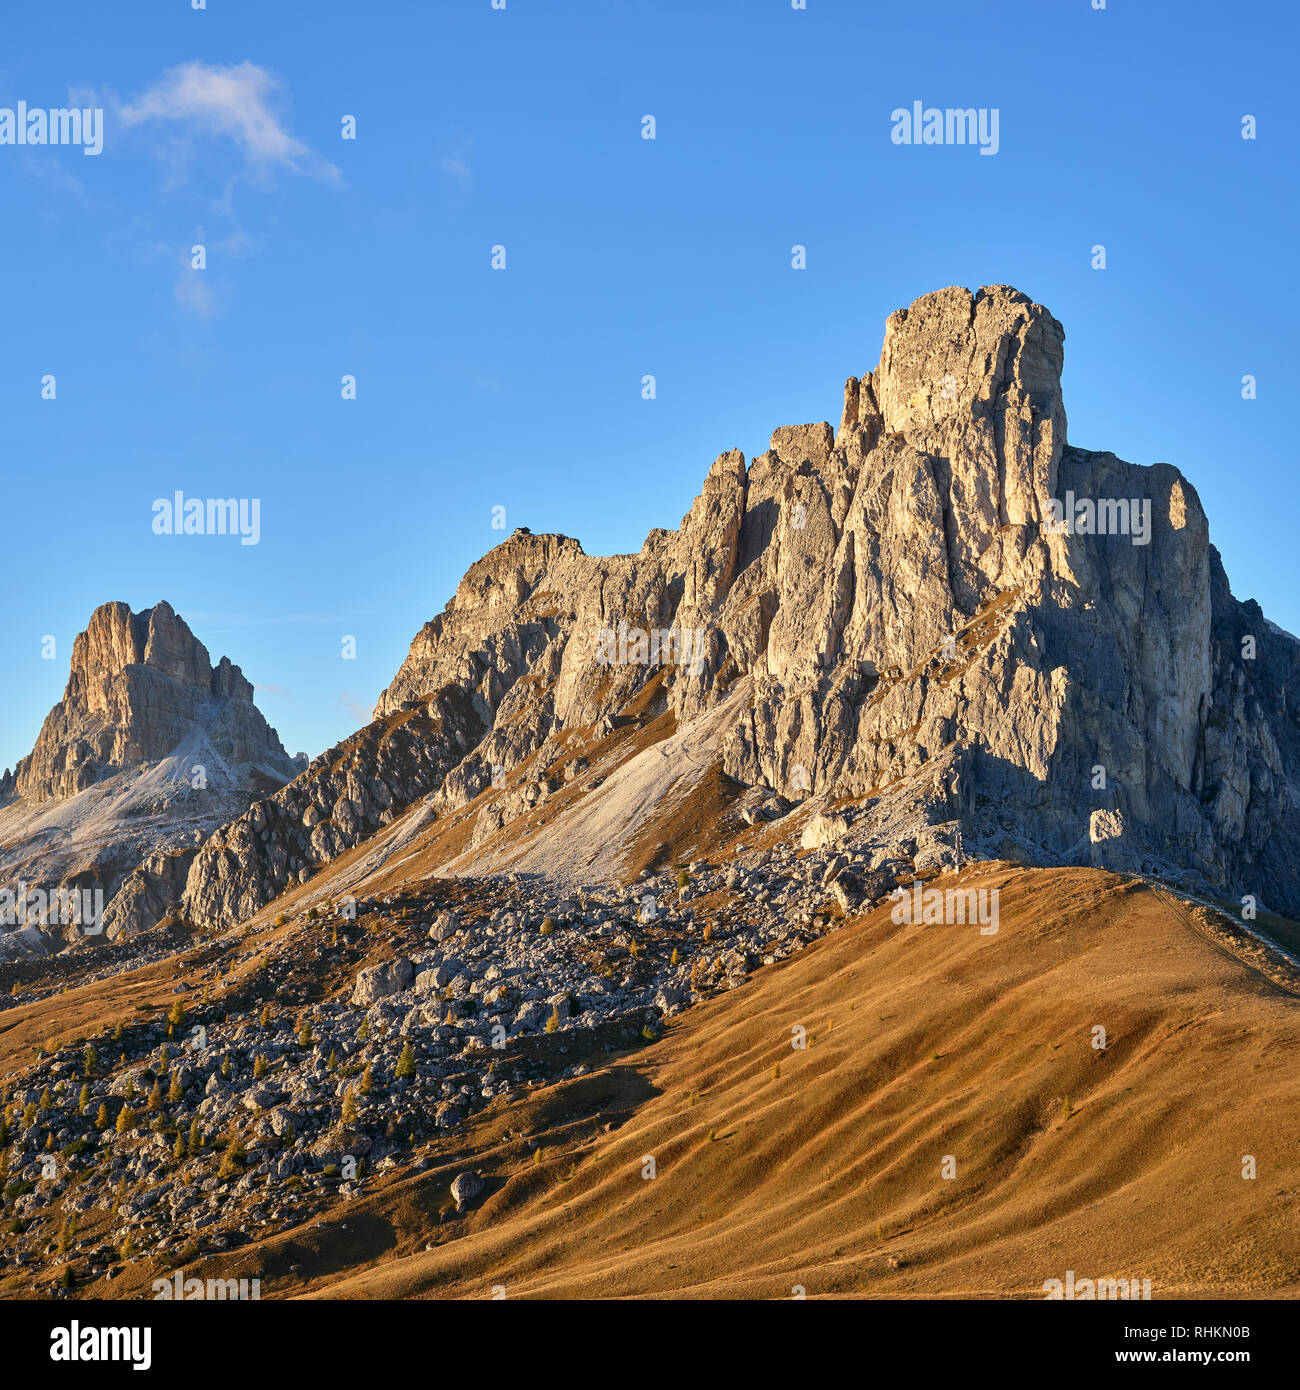 Vista di Ra Guesla, Nuvolau e Averau dal Passo Giau, Dolomiti, Belluno, Veneto, Italia Foto Stock